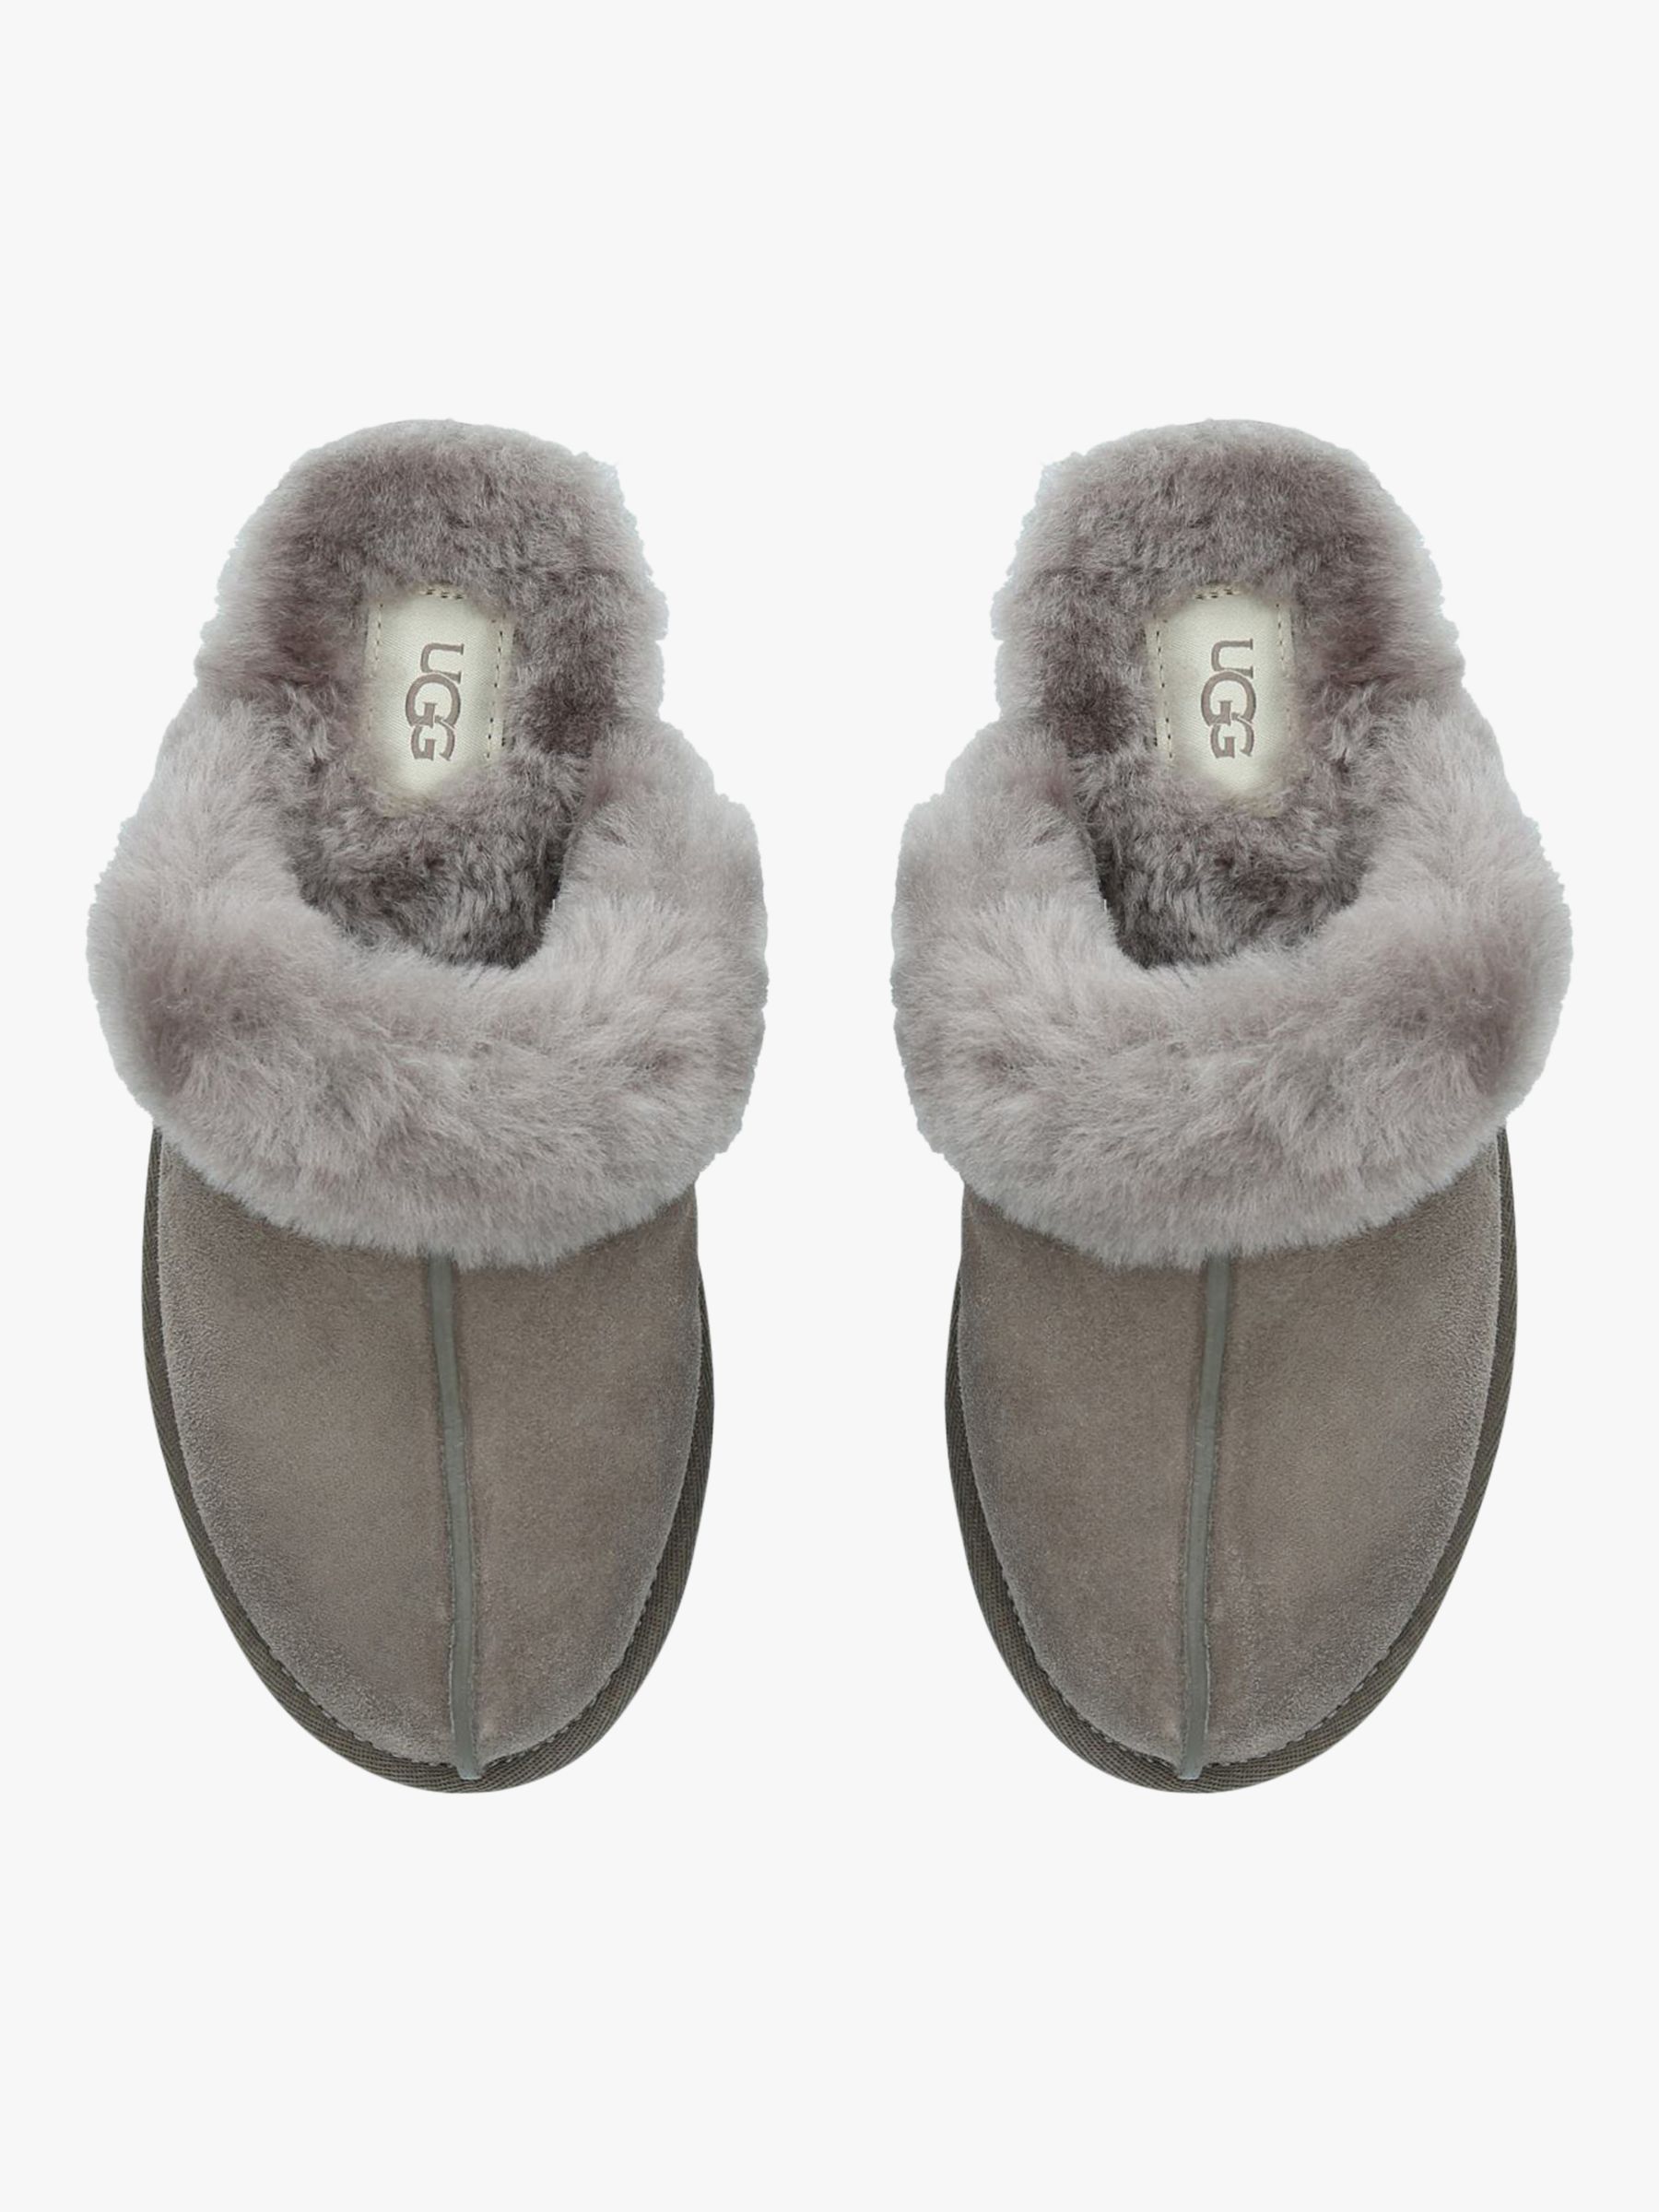 جزرة سنيزي شارب ugg slippers uk size 3 